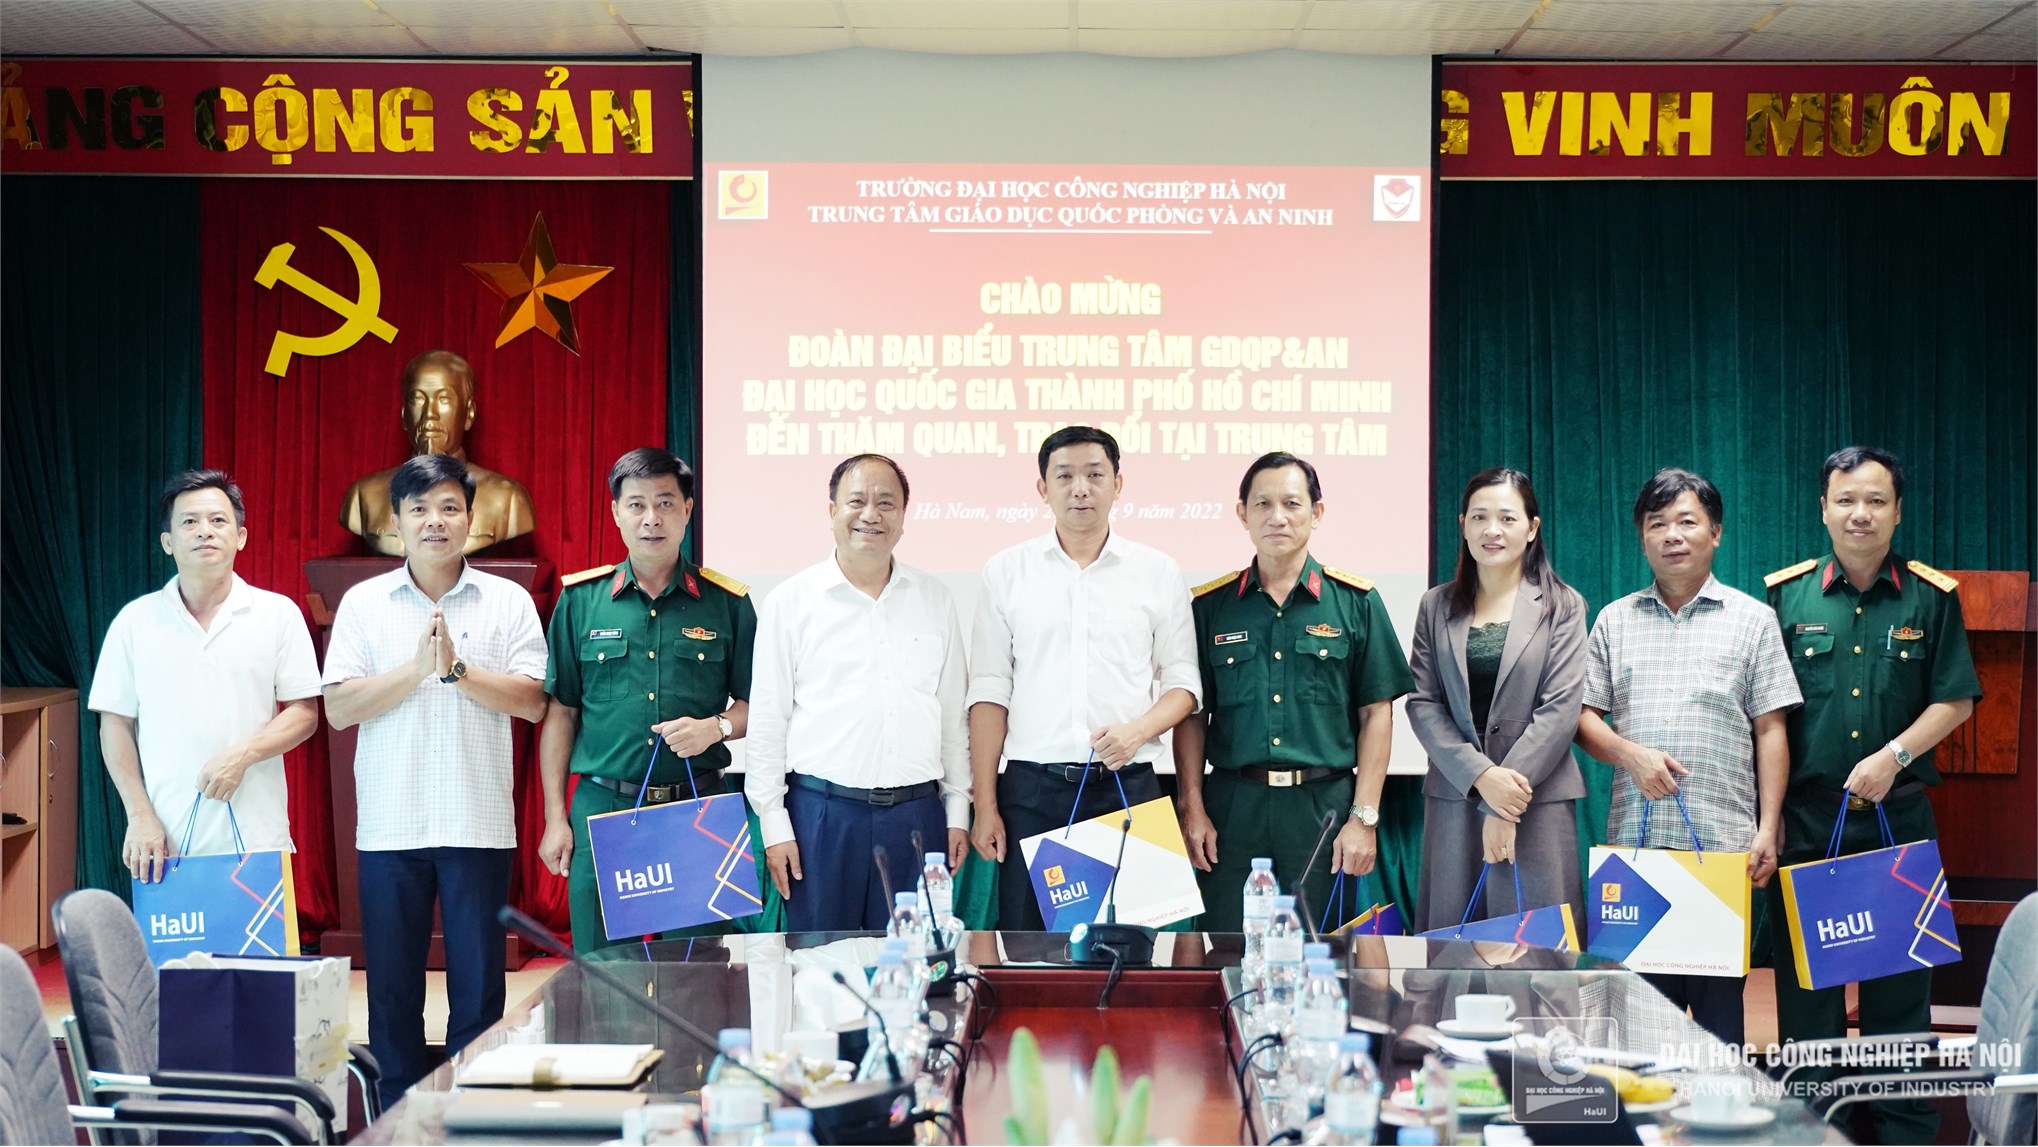 Tiếp đoàn công tác Trung tâm Giáo dục Quốc phòng và An ninh, Đại học Quốc gia TP. Hồ Chí Minh